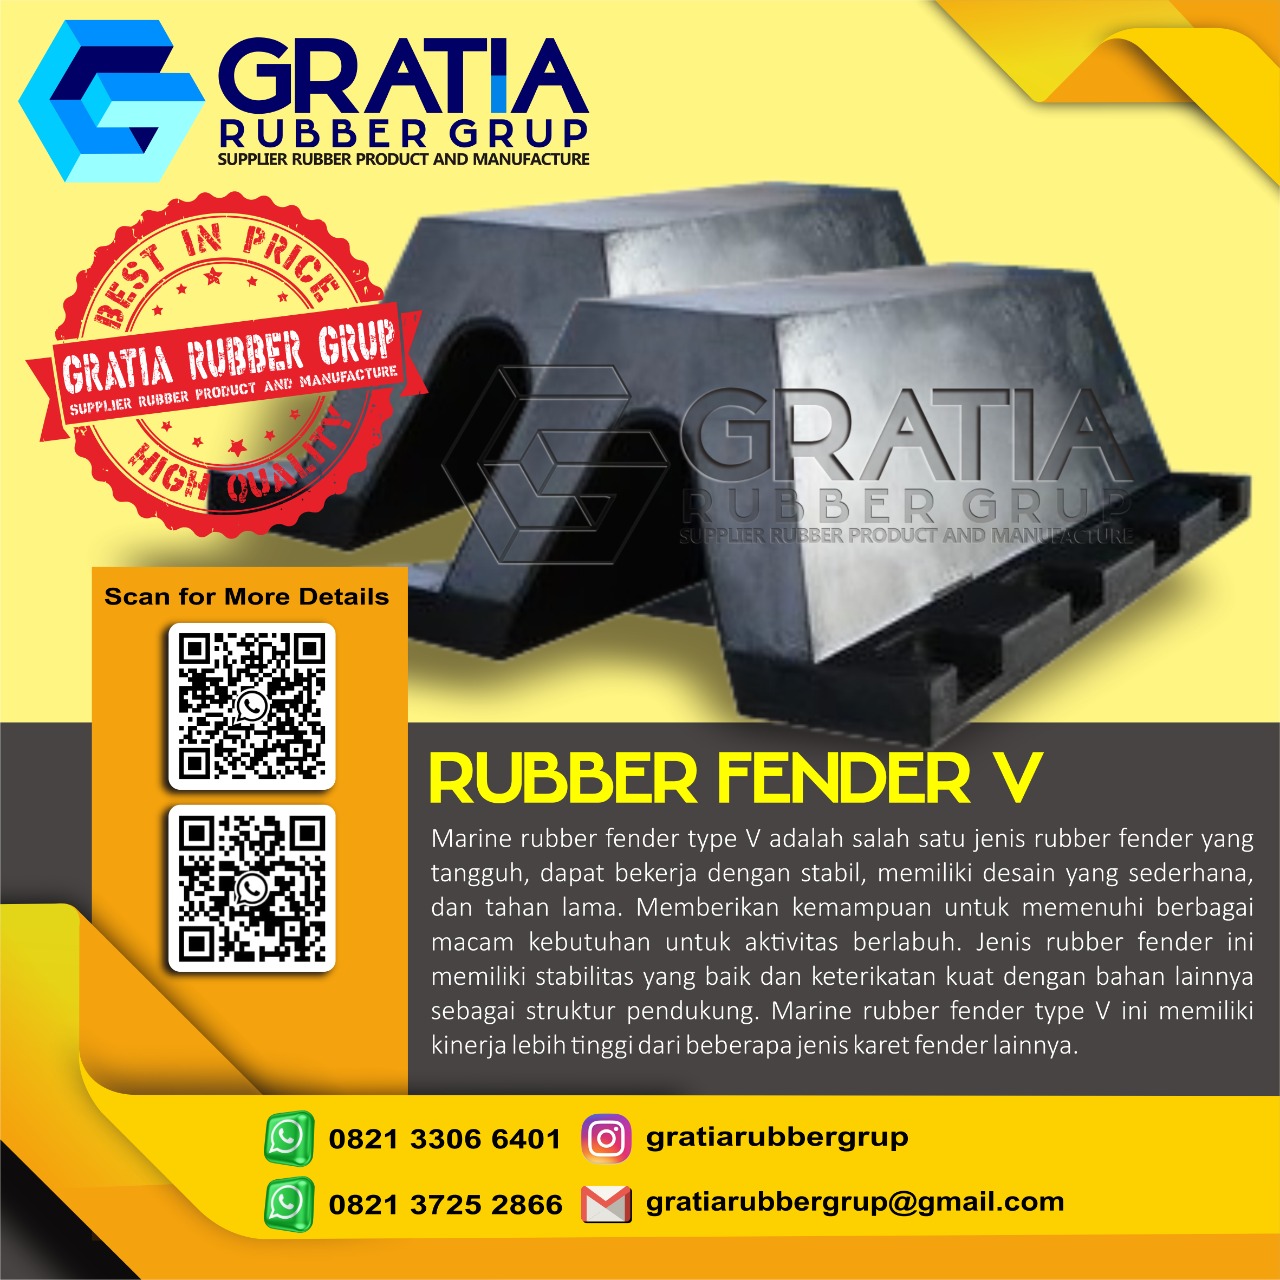 Distributor Rubber Fender Murah Dan Berkualitas  Melayani Pengiriman Ke Prabumulih Sumatera Selatan Hub 0821 3306 0461